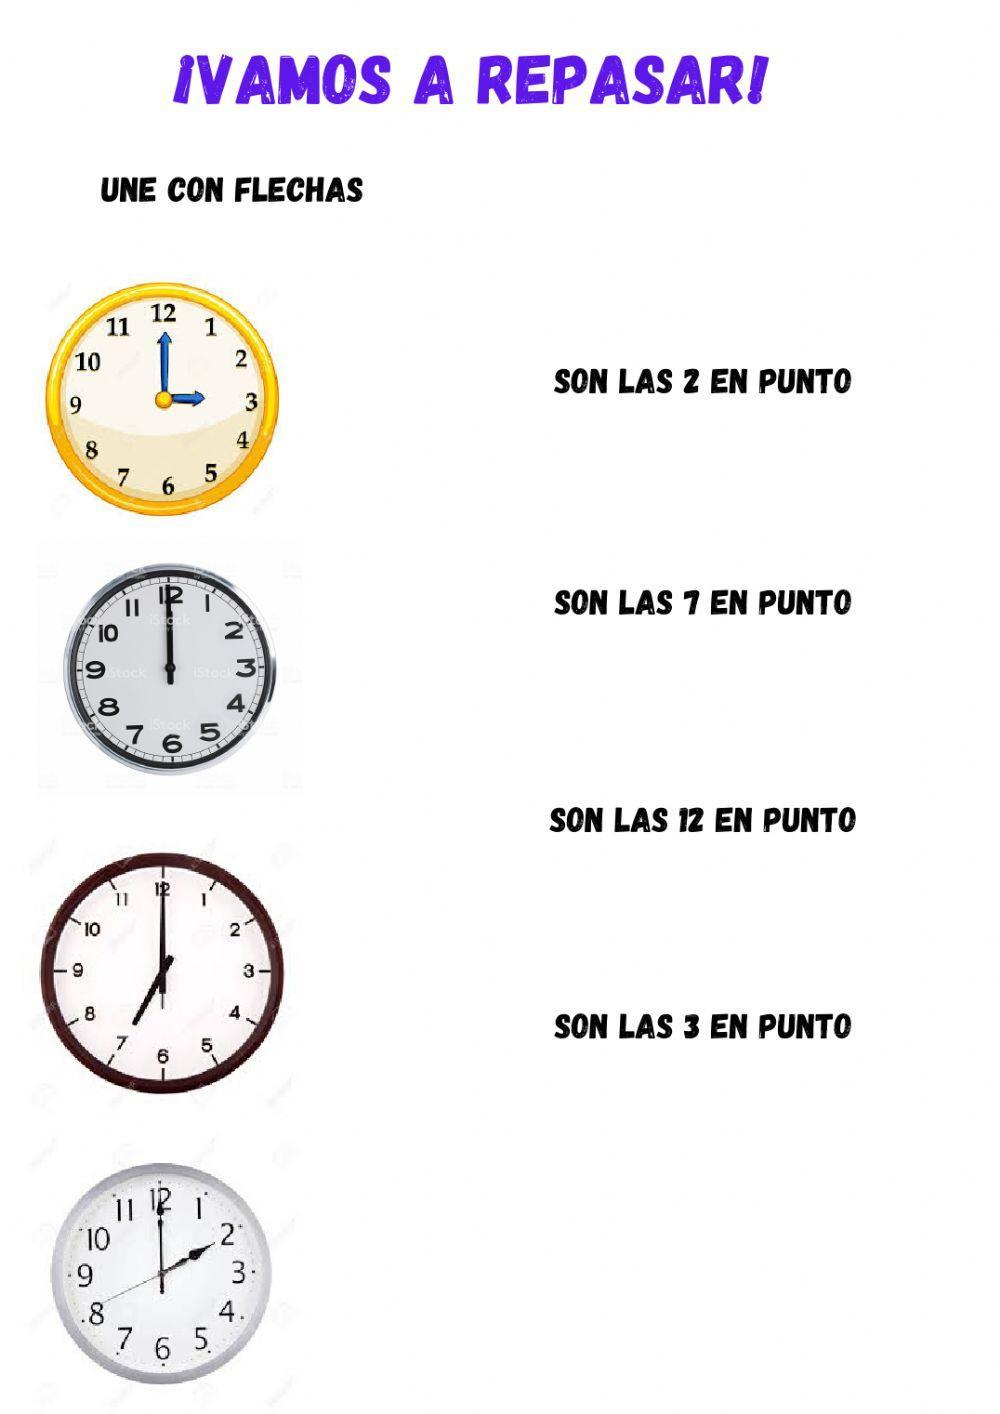 El reloj de agujas, la hora en punto e y media